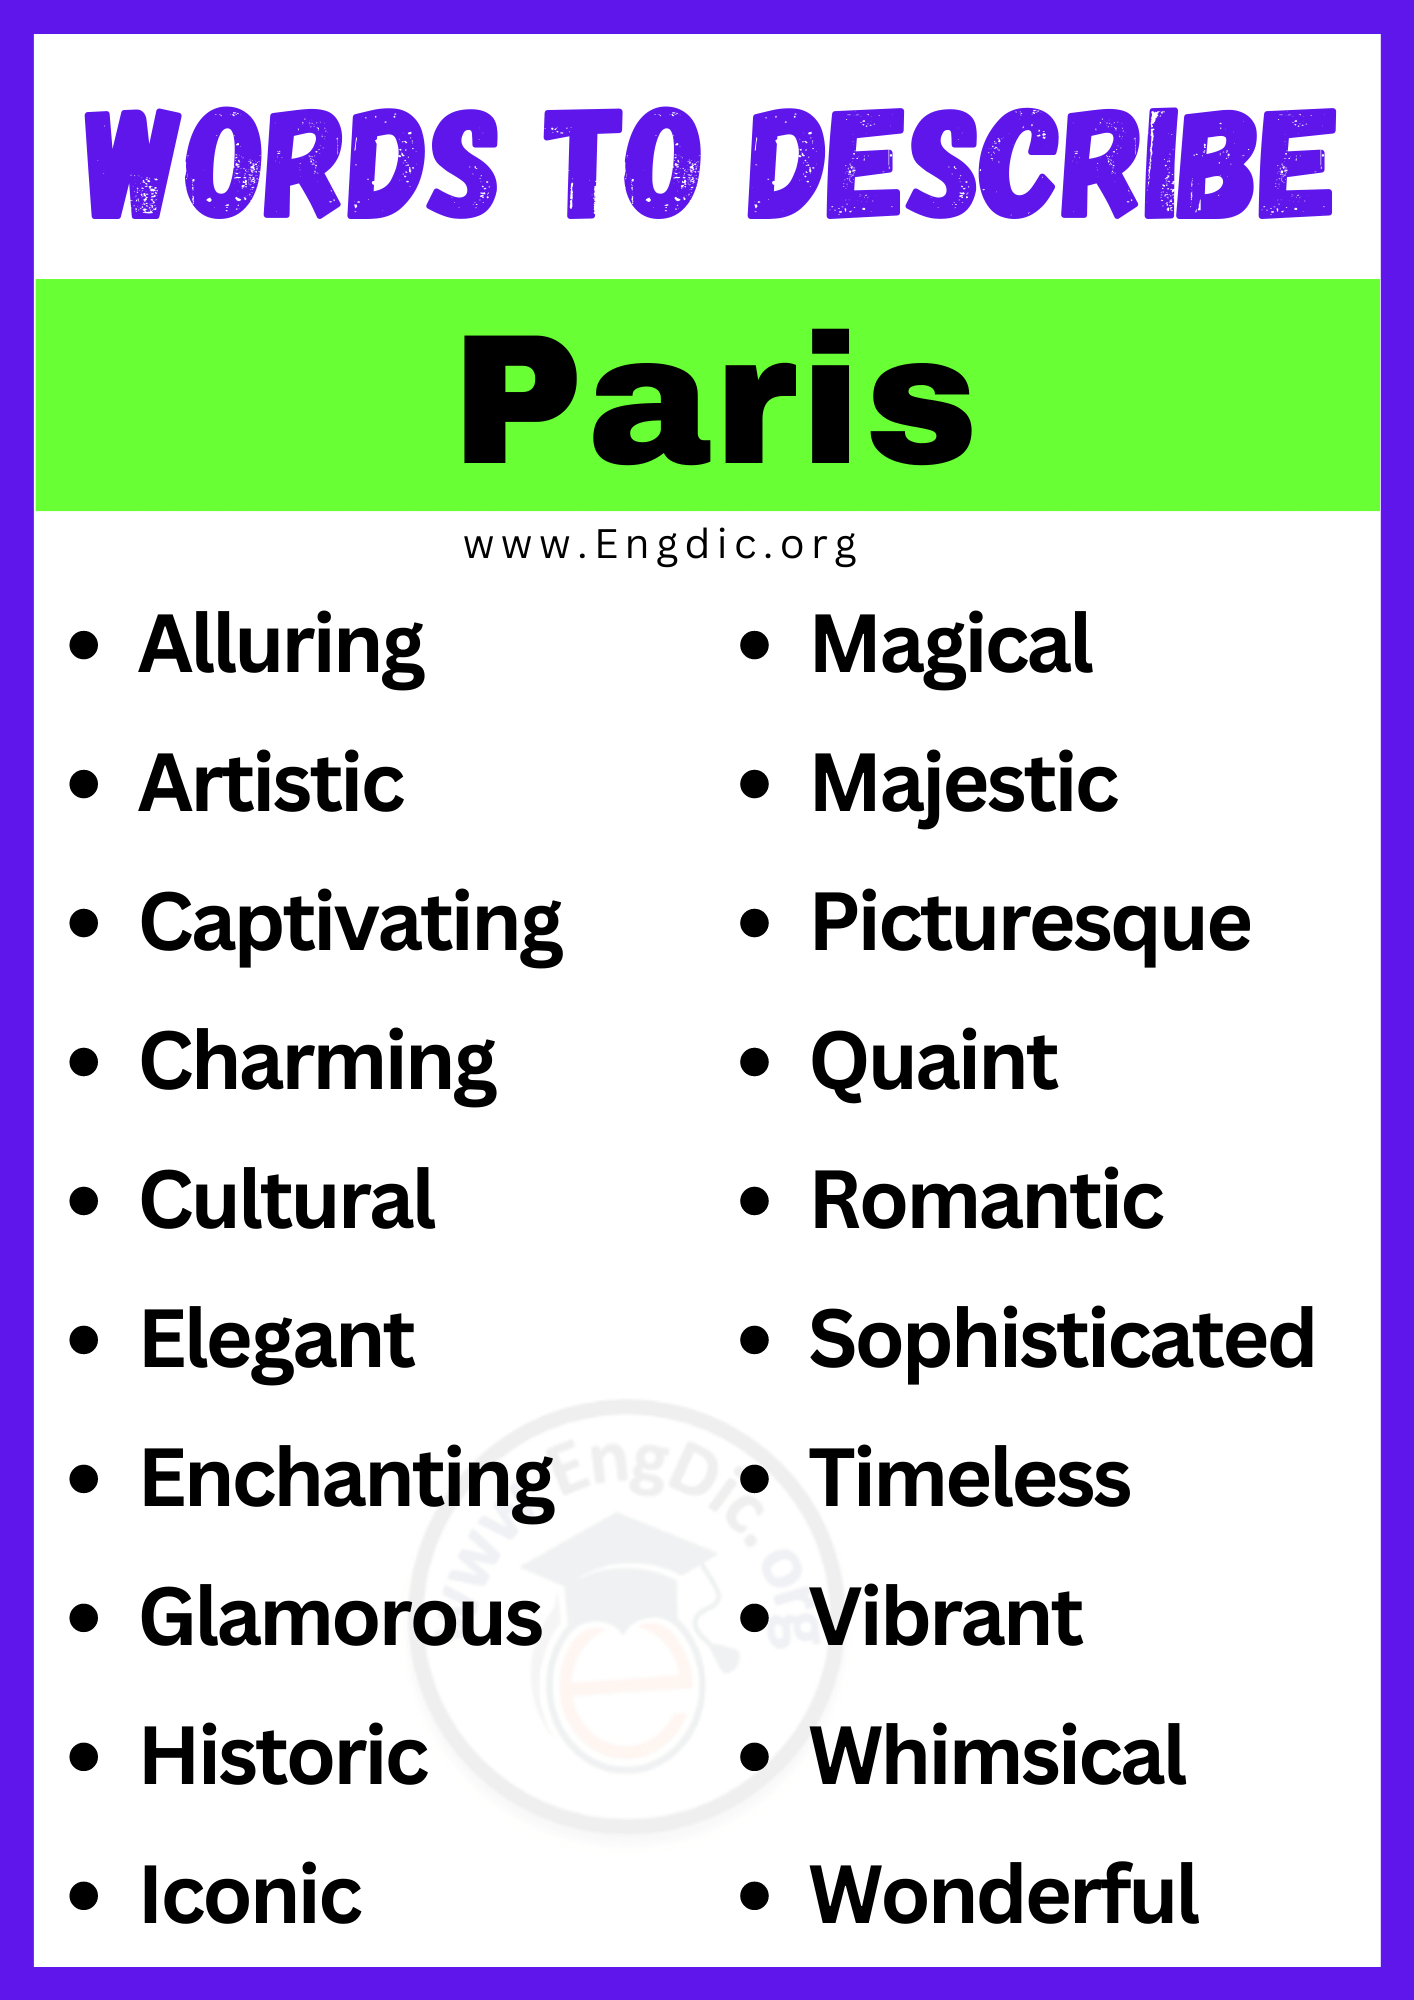 Words to Describe Paris